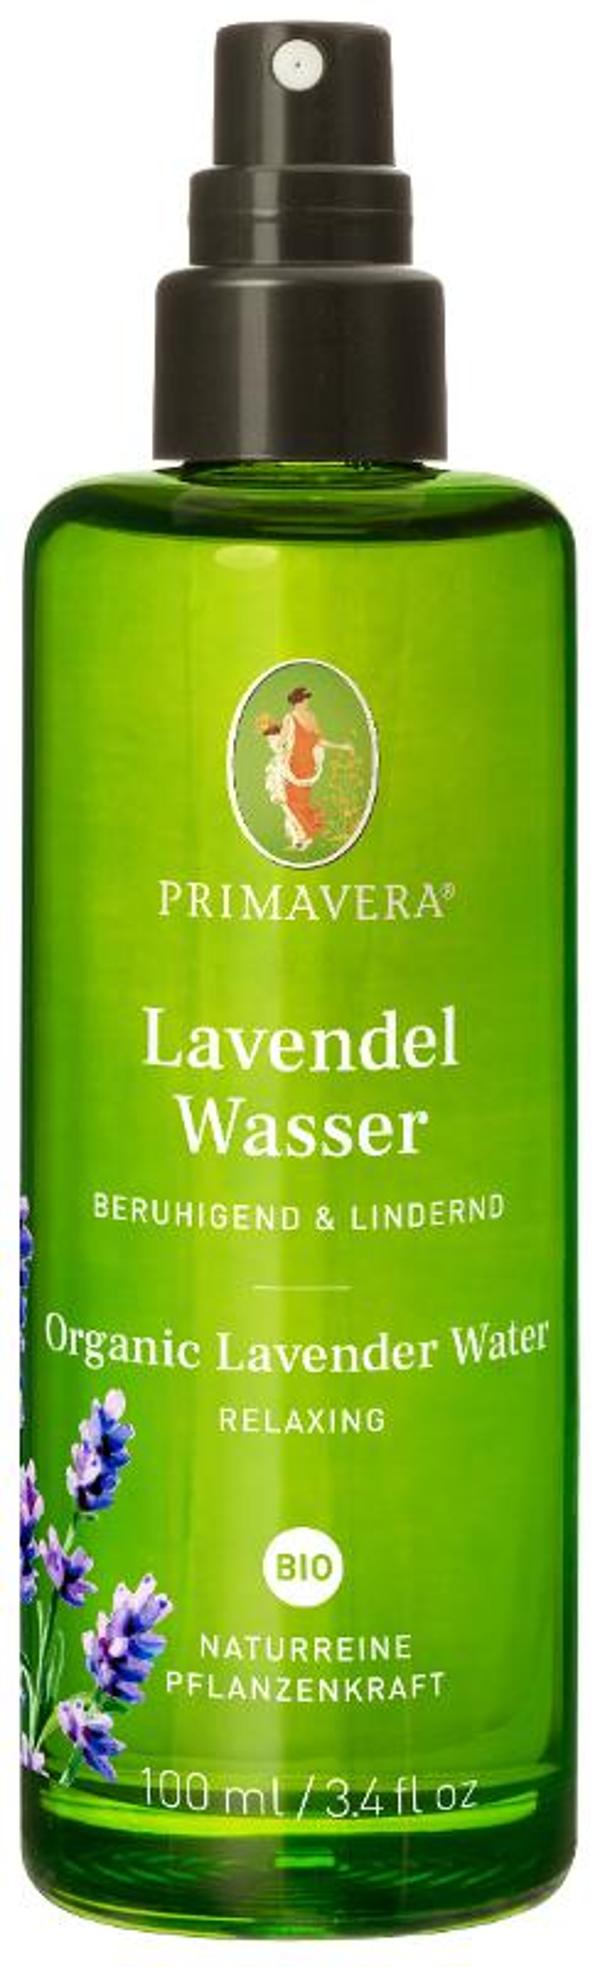 Produktfoto zu Lavendelwasser 100 ml